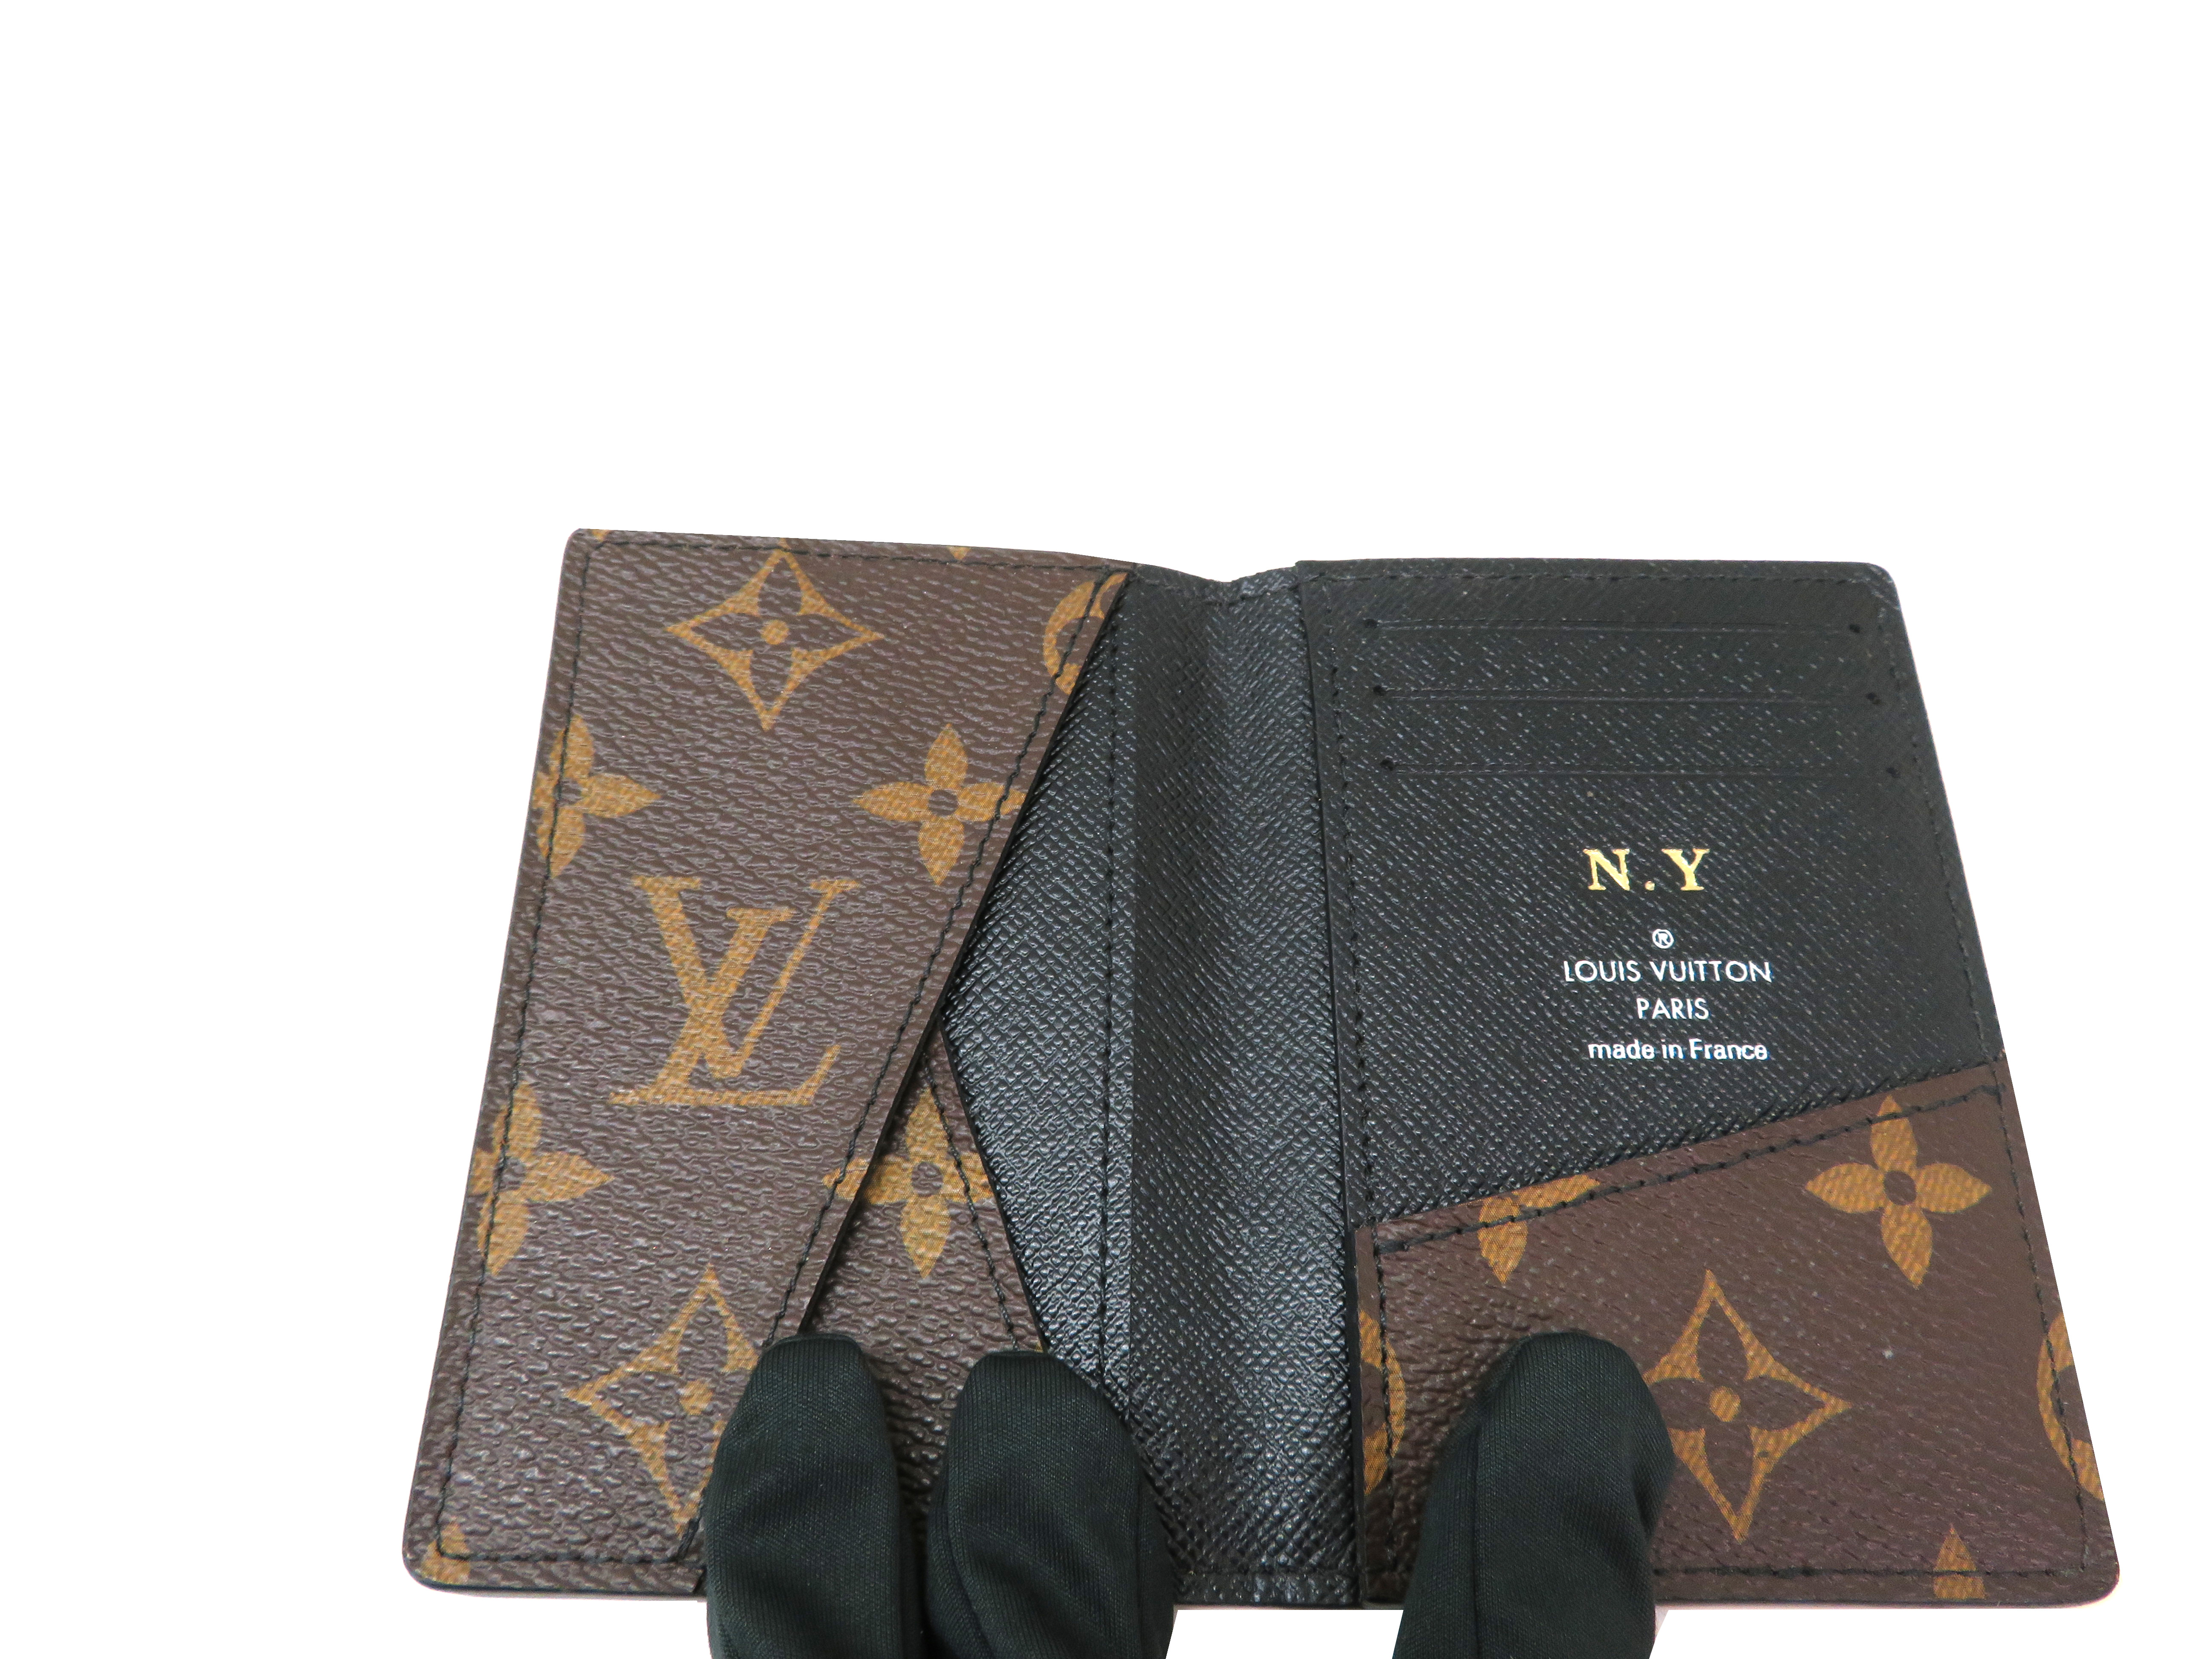 Louis Vuitton ルイヴィトン 財布 小物 オーガナイザー ドゥポッシュ モノグラム マカサー M イニシャル入り 4 の購入なら 質 の大黒屋 公式